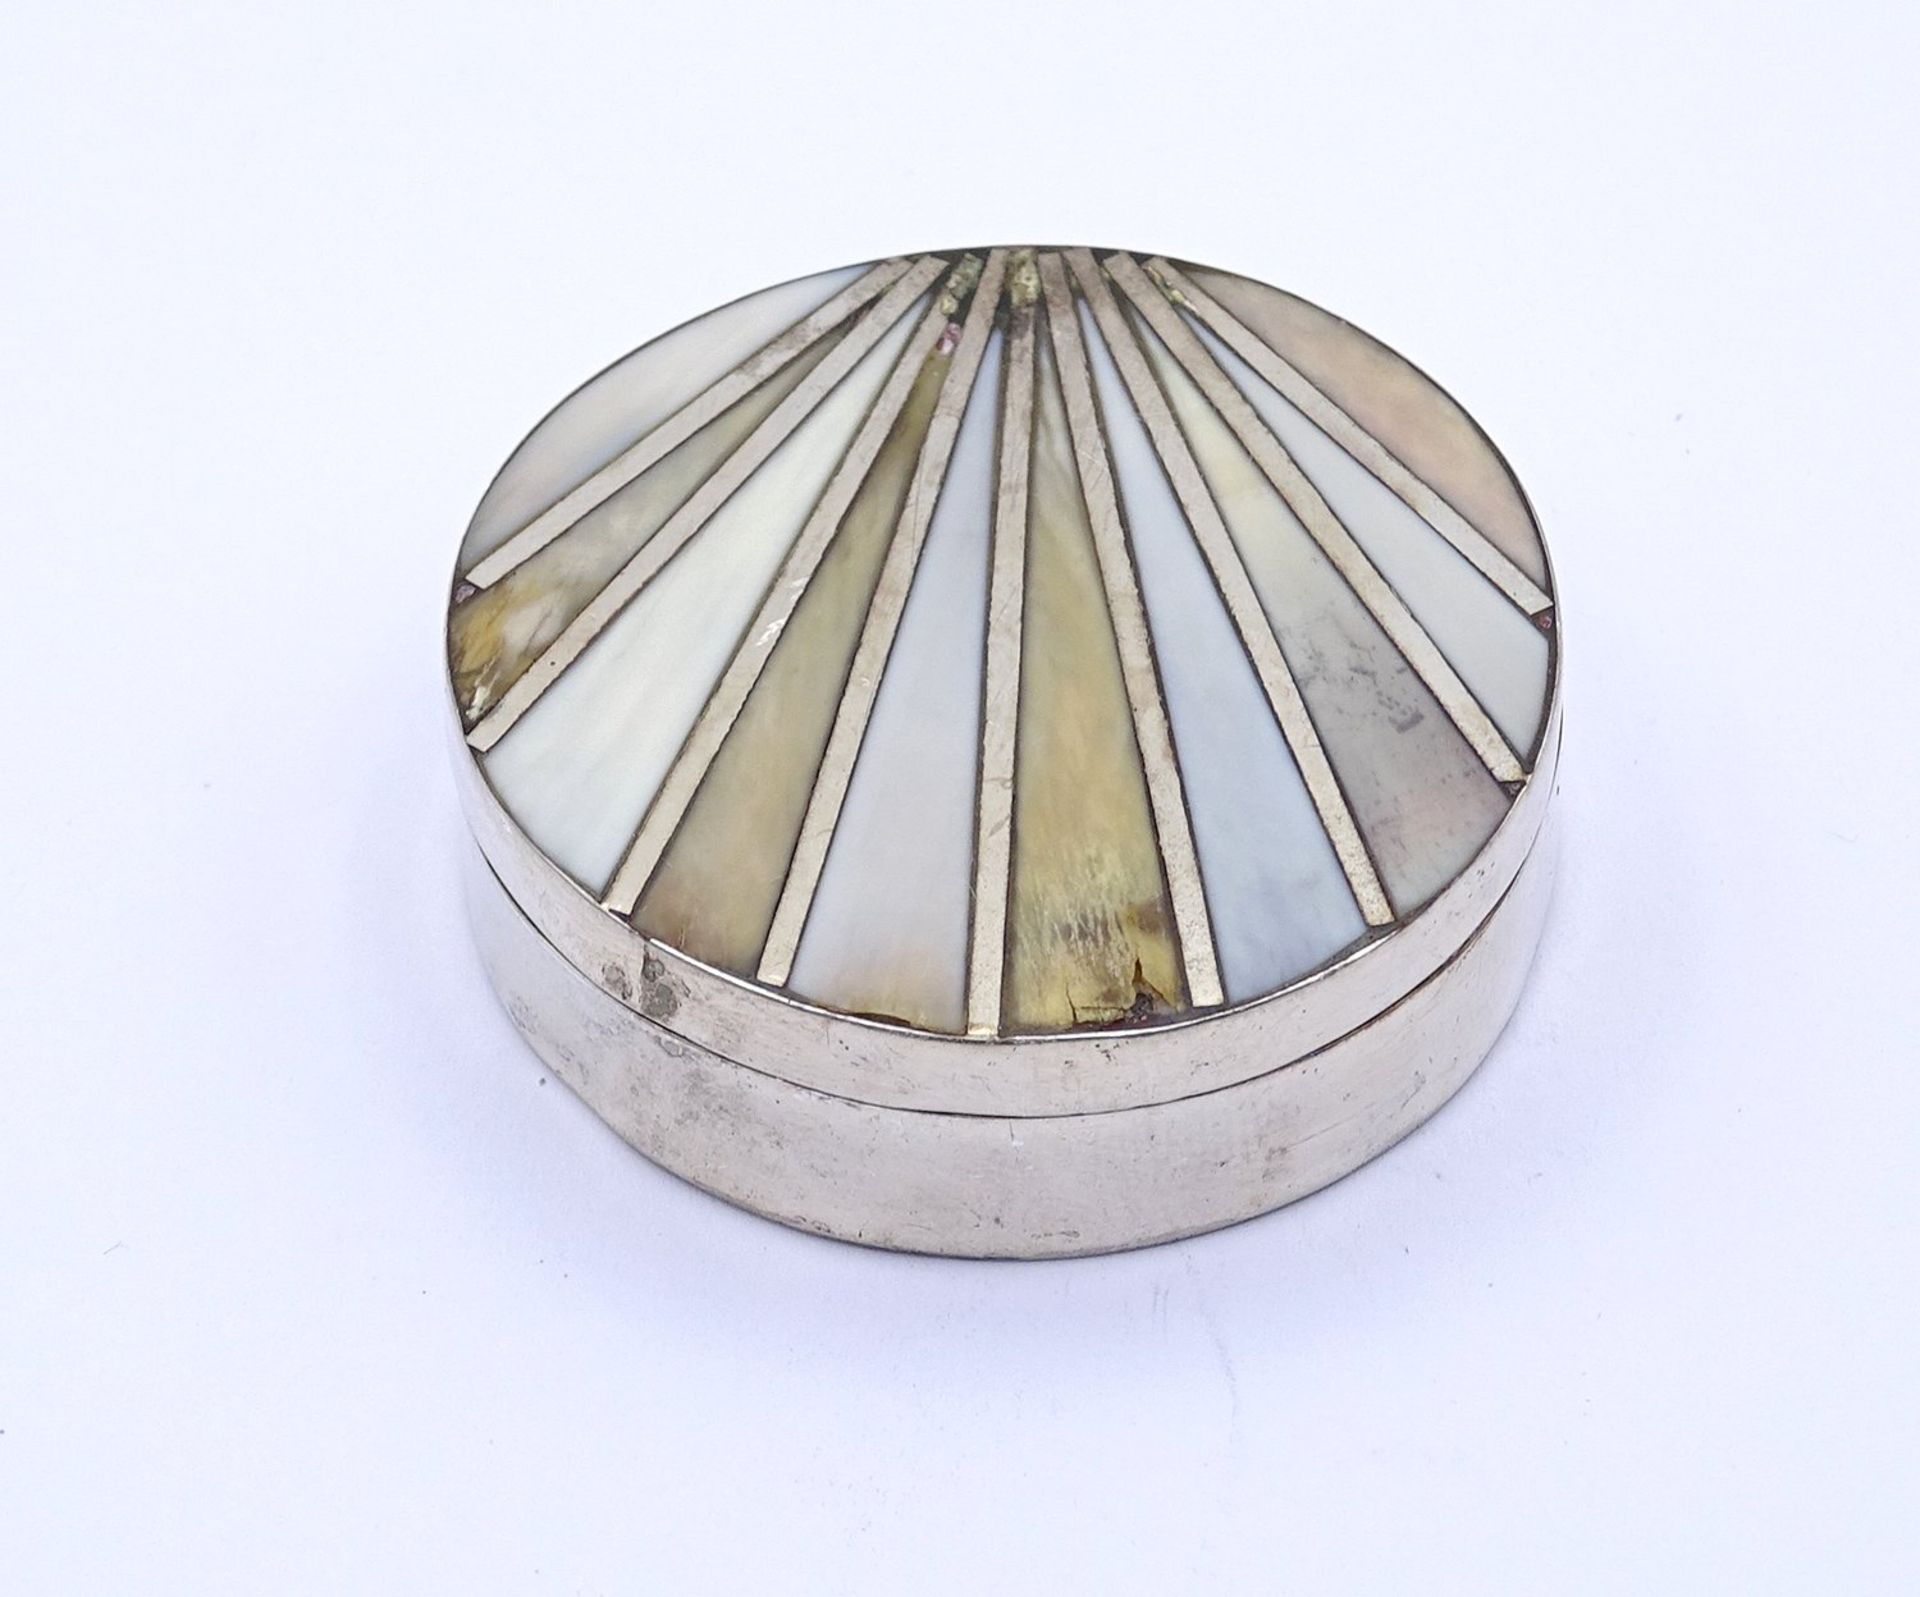 Silberne Pillendose (gepr.) mit Perlmutteinlagen, Ø 4,3 cm, H. 1,2 cm, 22 gr., mit Altersspuren, Pe - Bild 2 aus 3